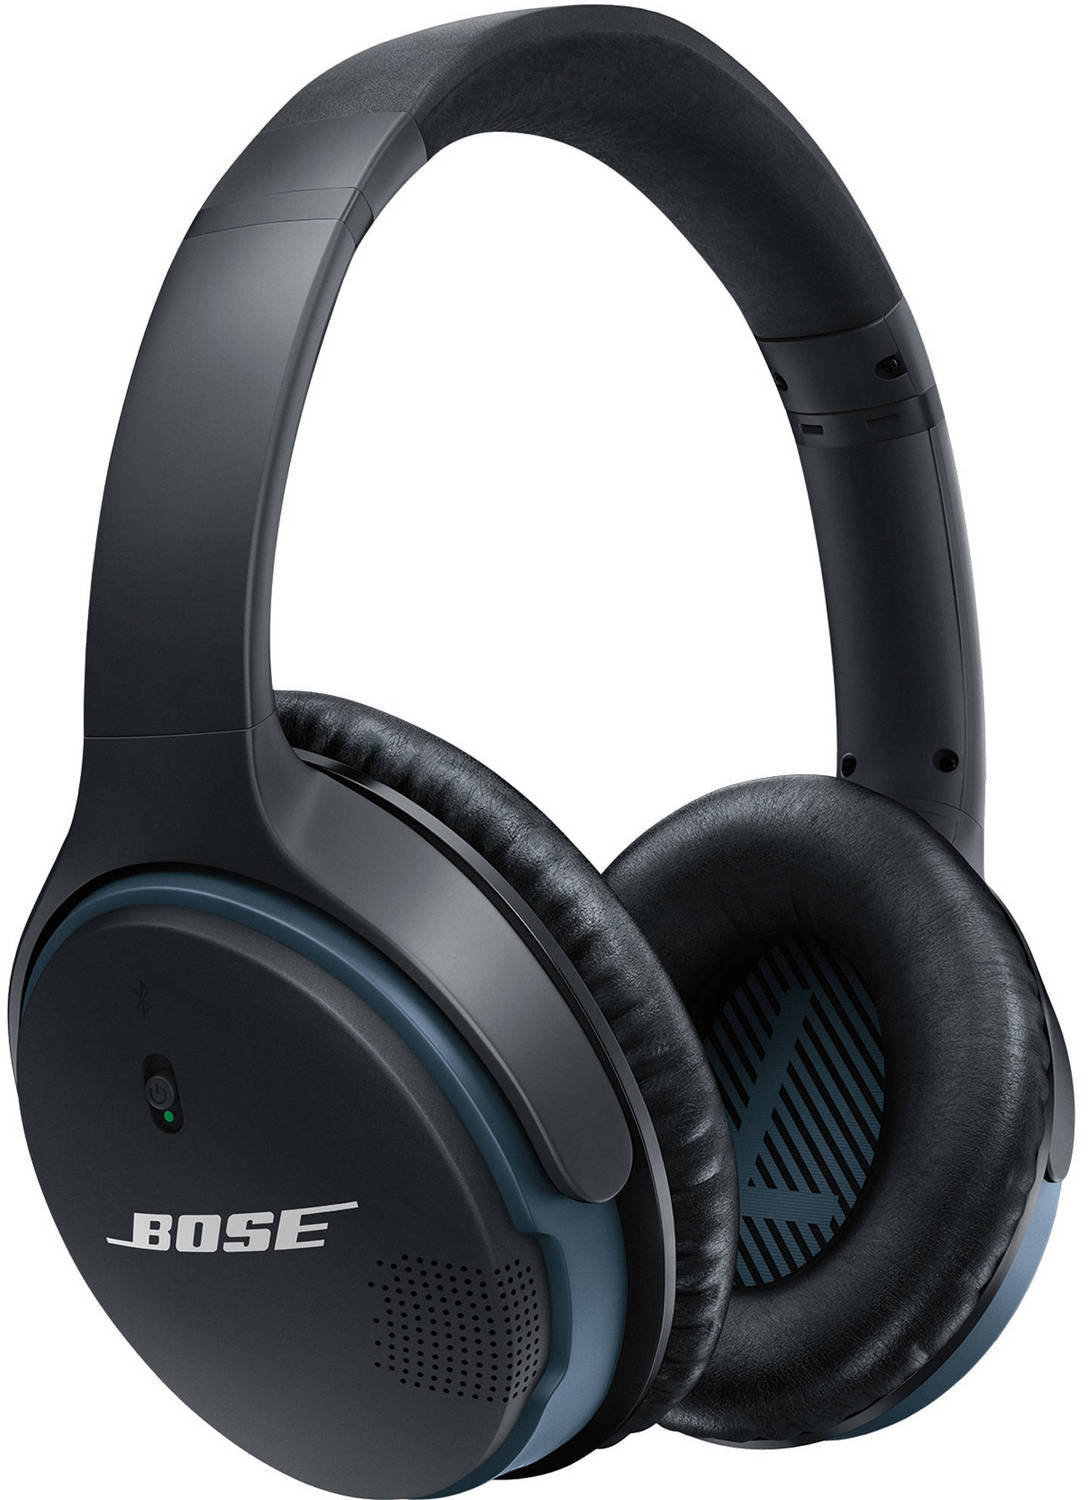 Wireless On-ear headphones Bose SoundLink II Black